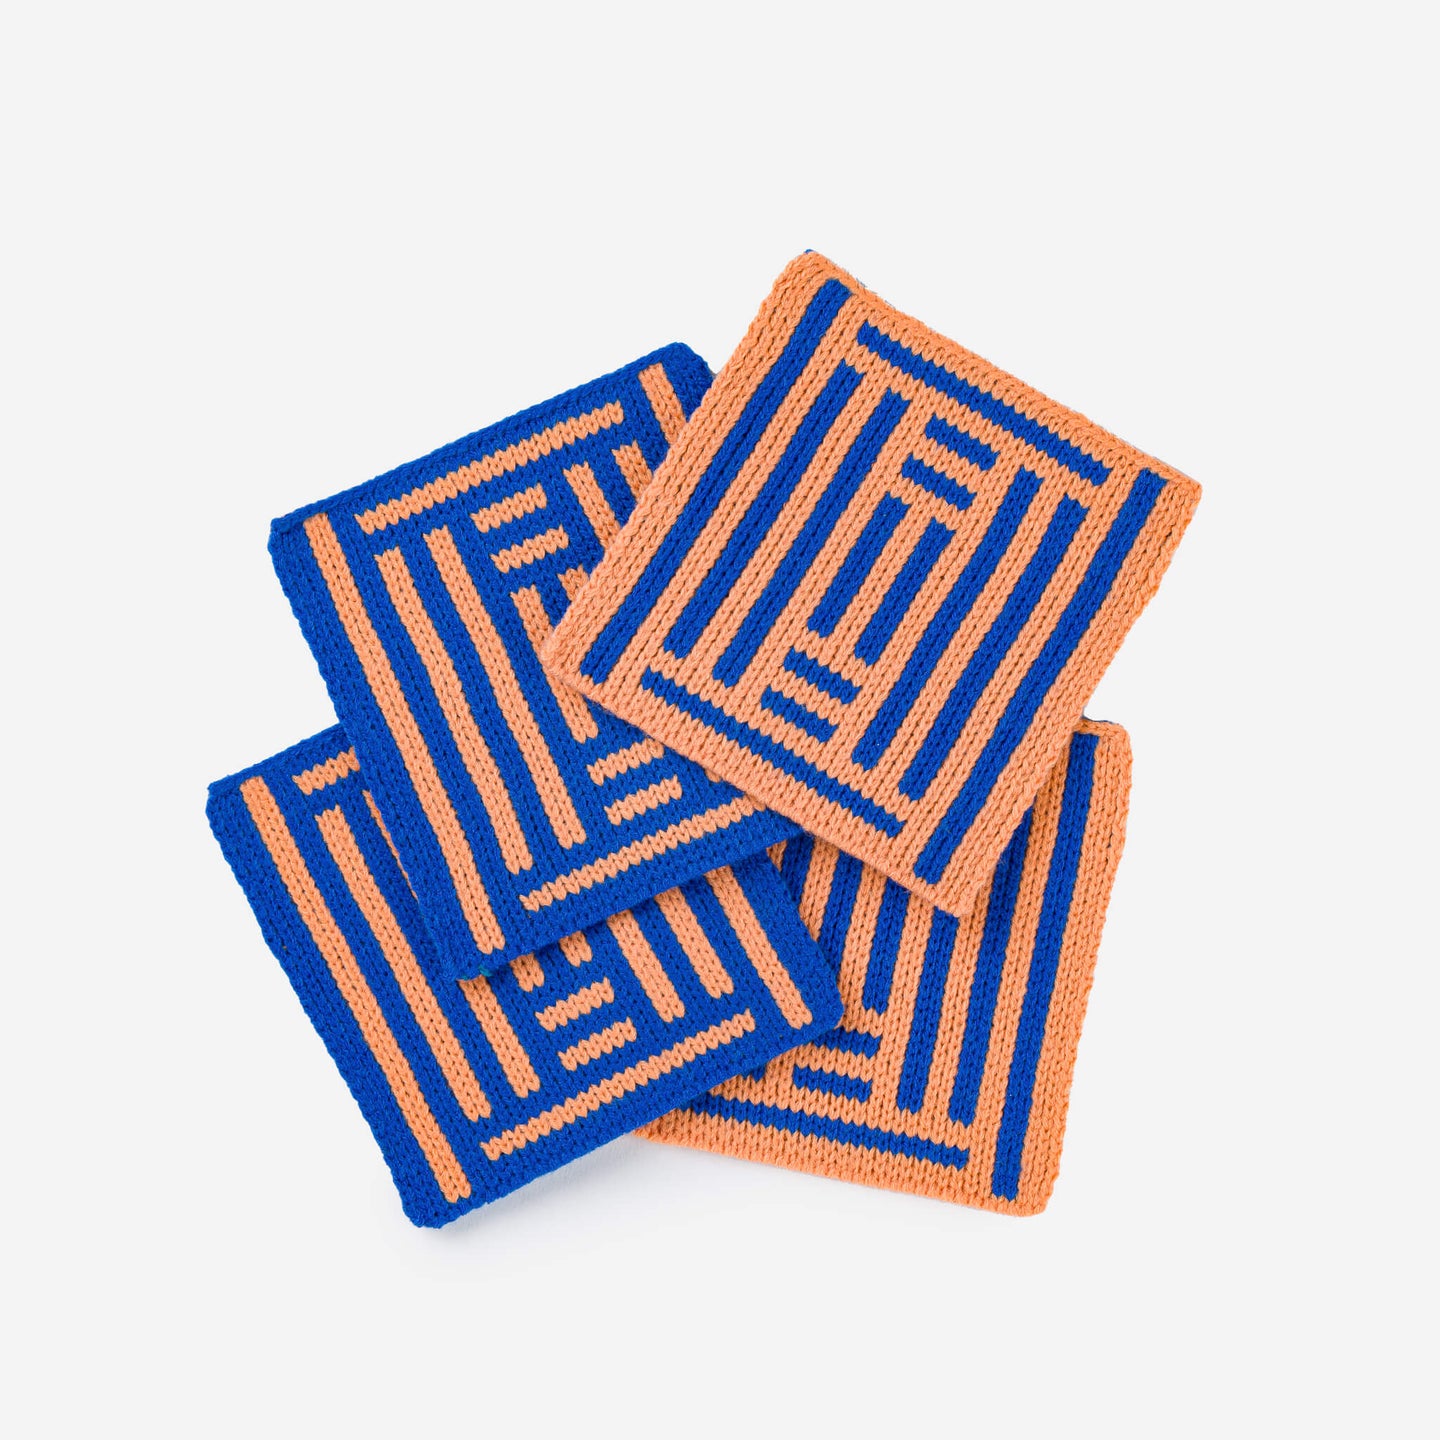 Columns Knit Coasters Mix Match Graphic Pattern